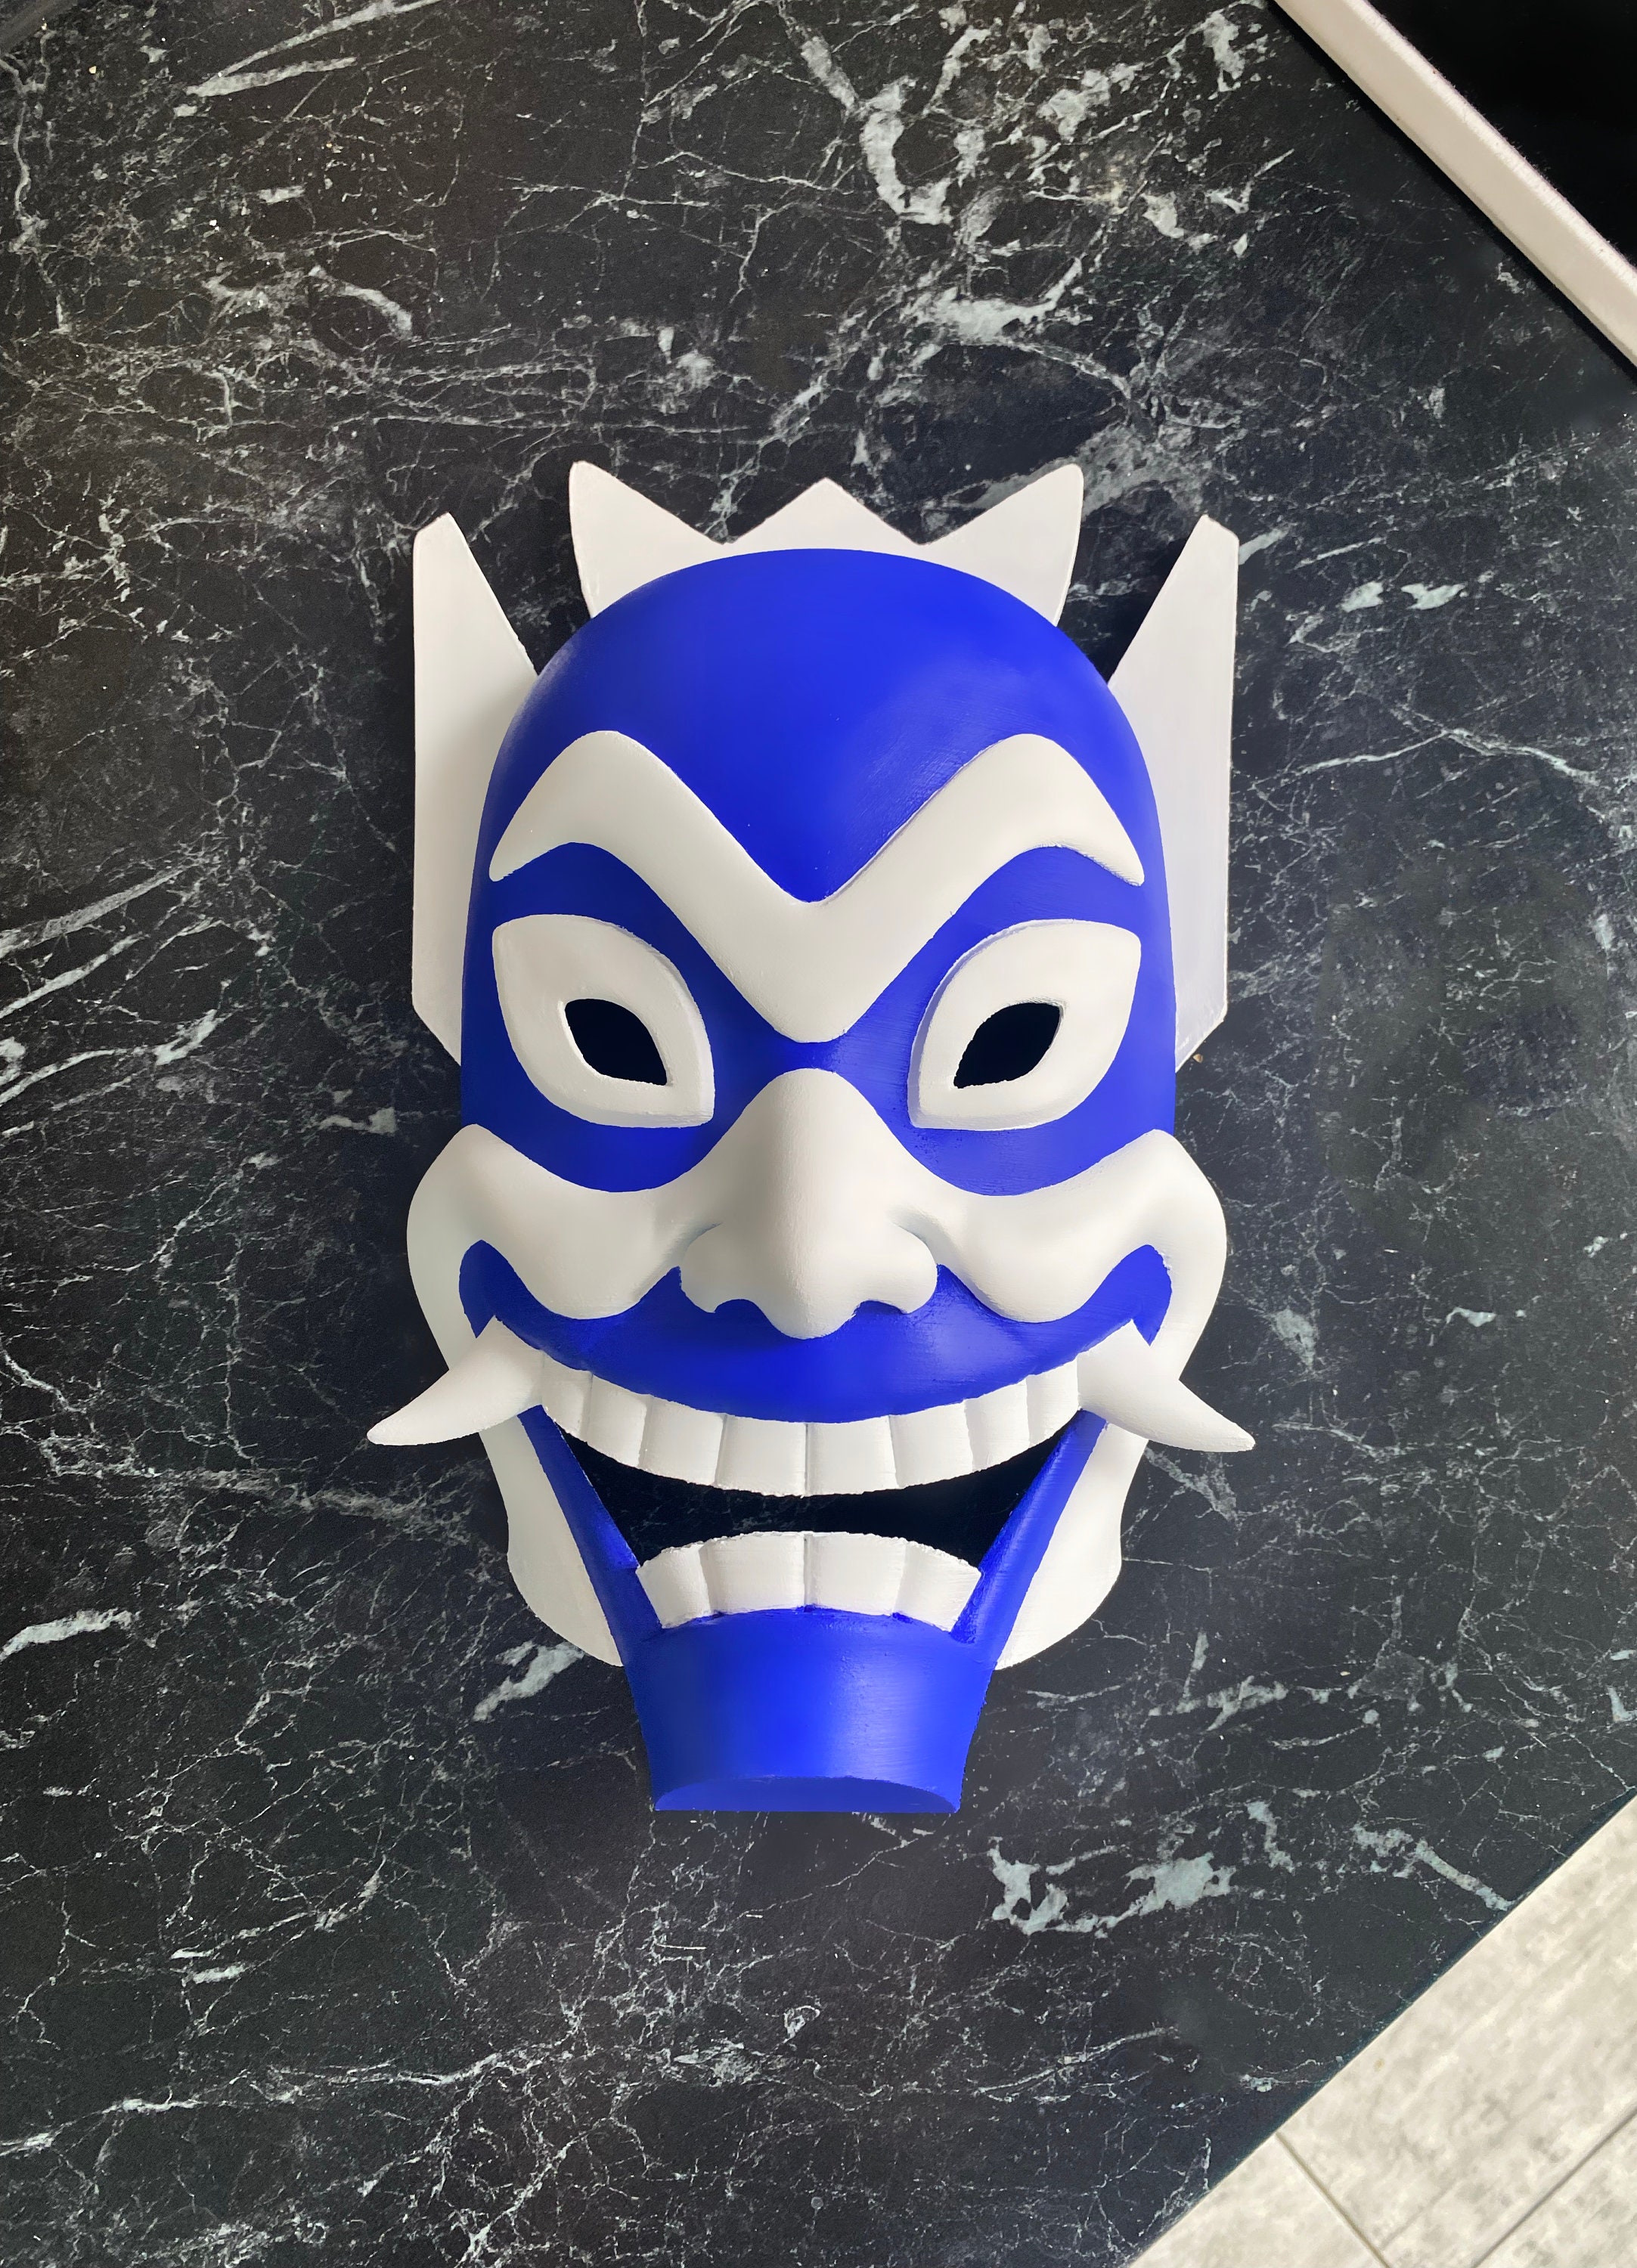 Avatar16 Gas Mask by smyro on DeviantArt